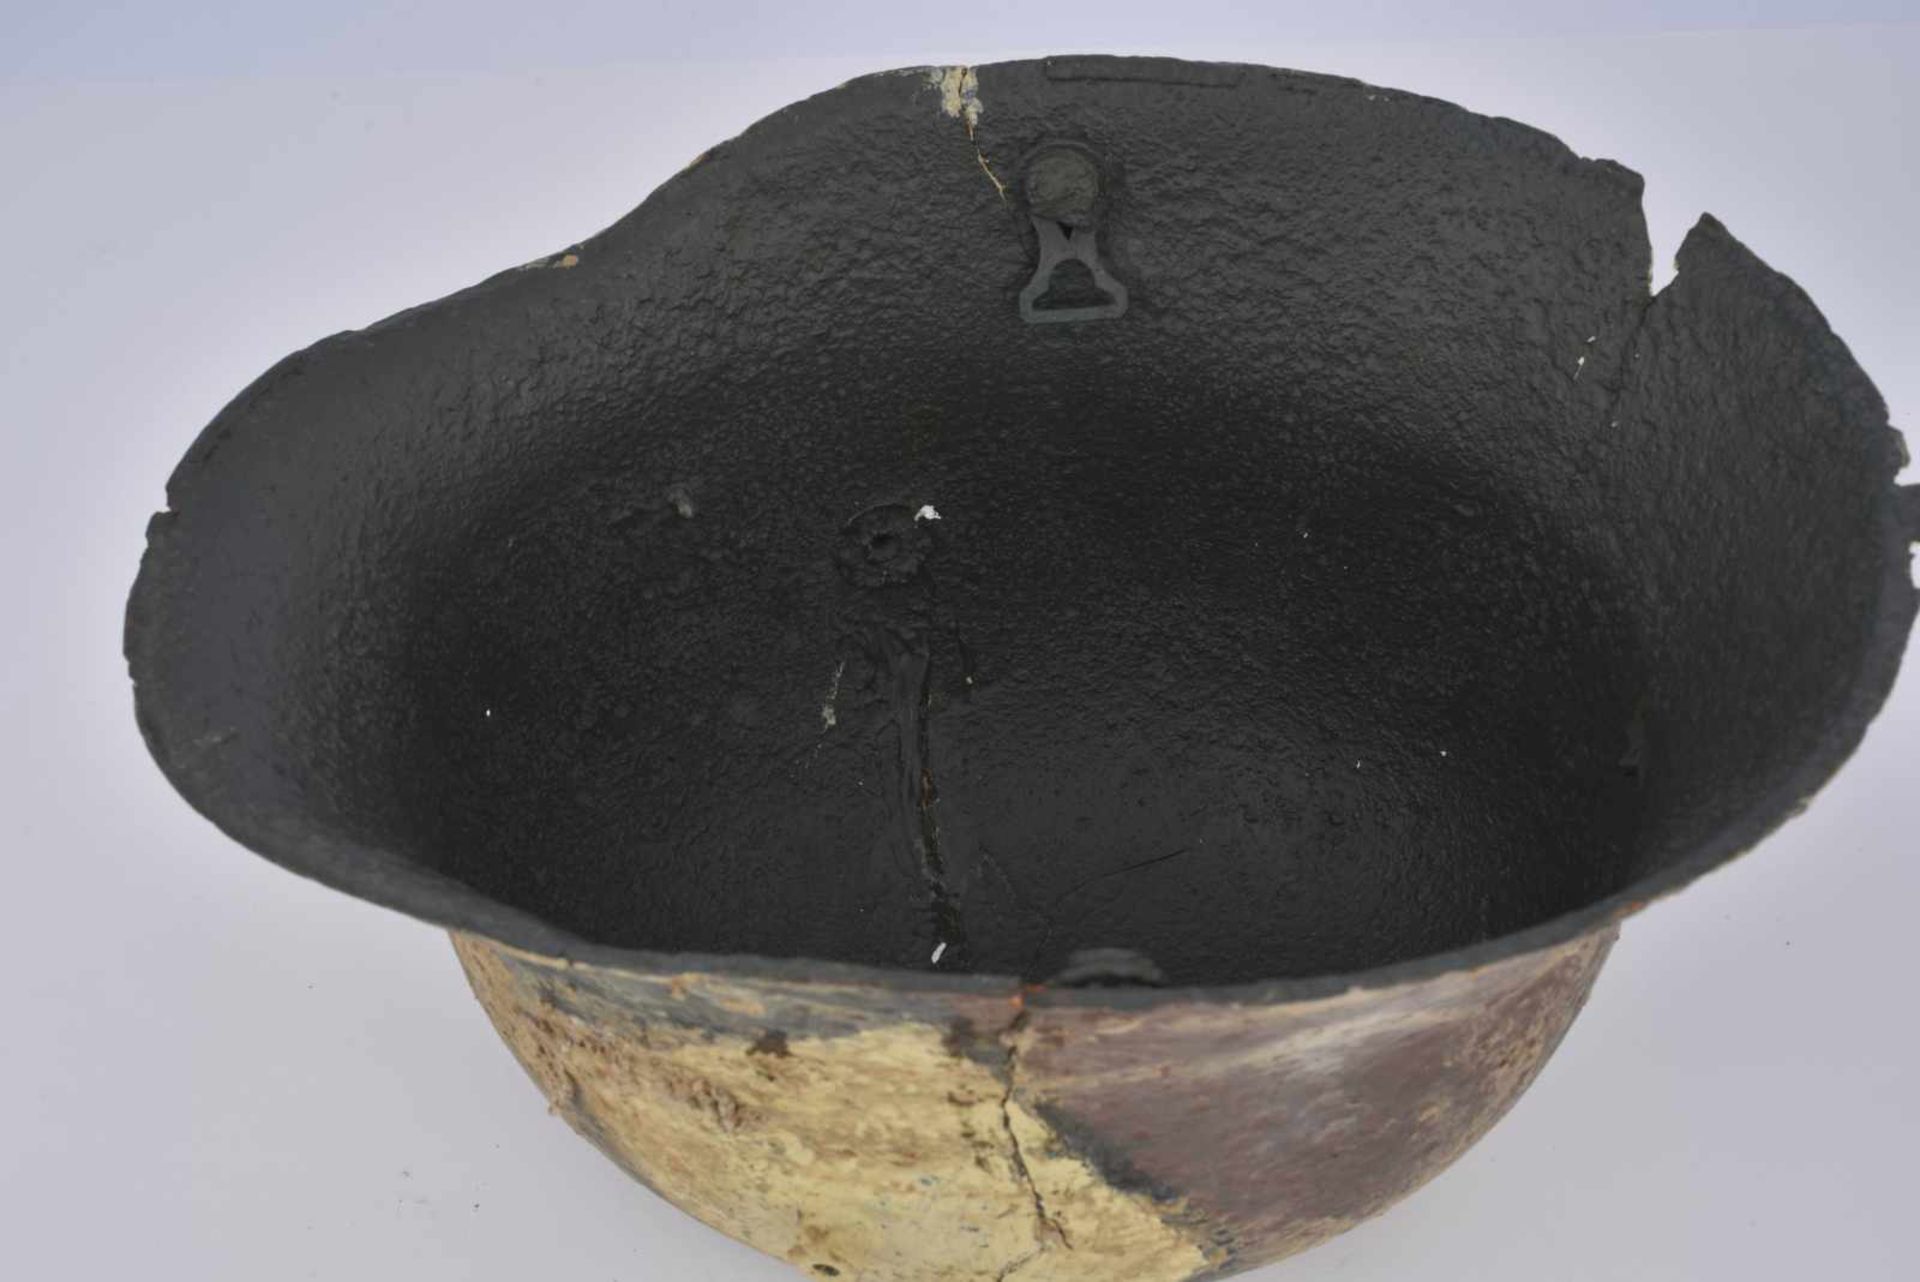 Coque de casque d'acier StahlhelmMle16 camouflé sans intérieur, peinture postérieure. Etat II - Bild 2 aus 4